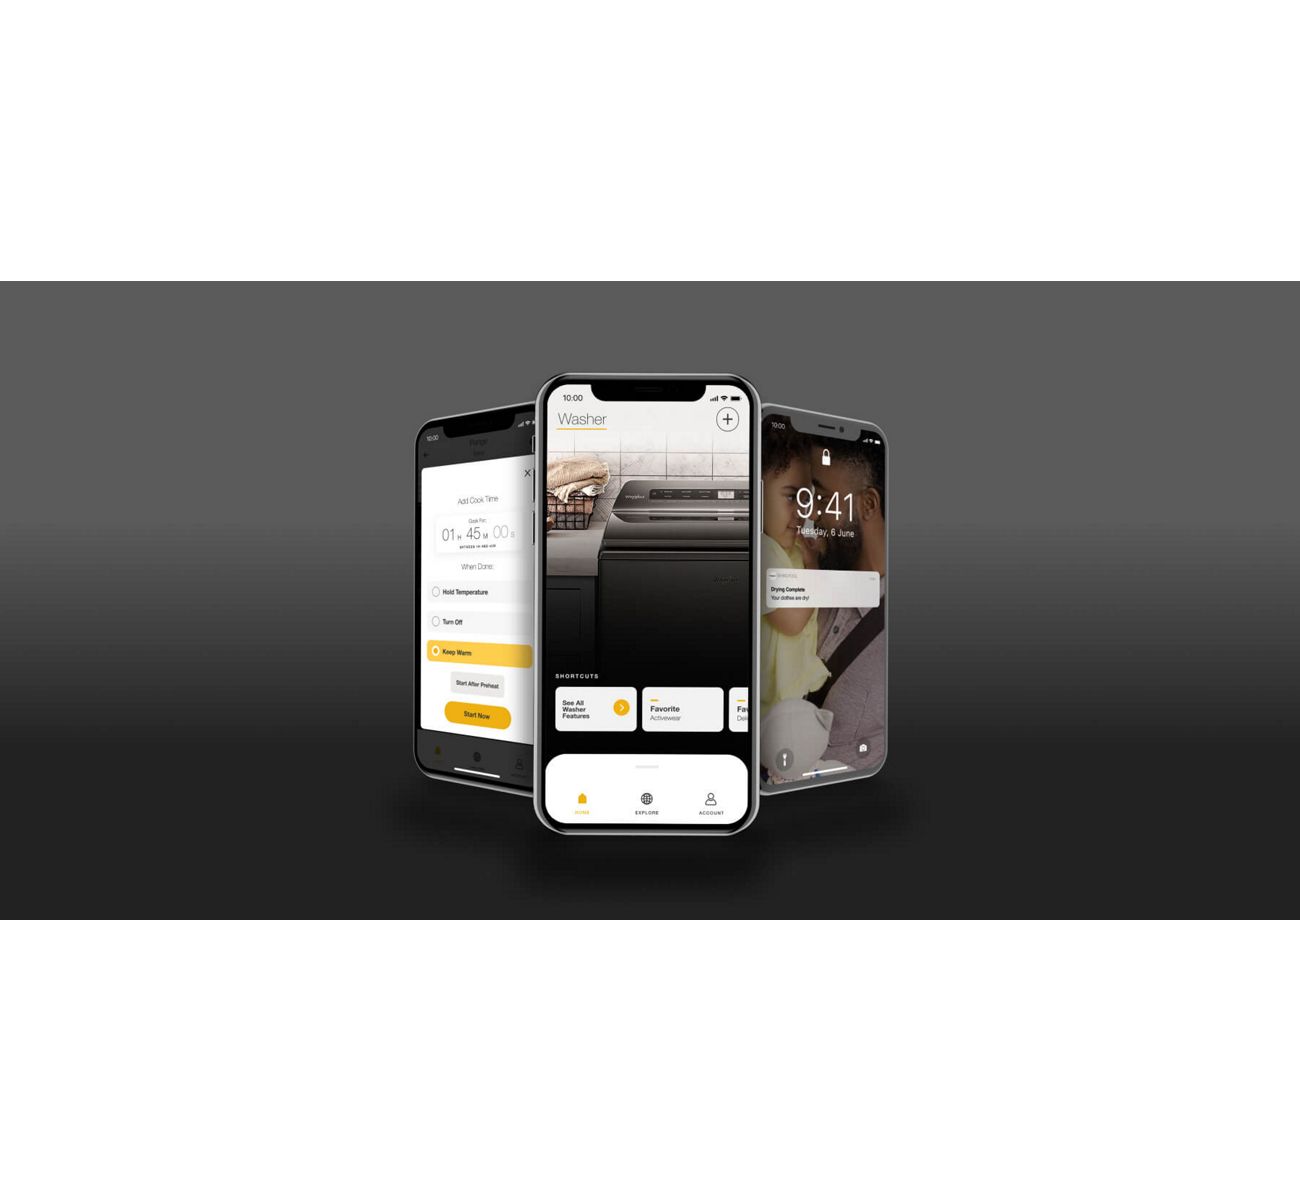 三台智能手机显示惠而浦®应用程序和通知